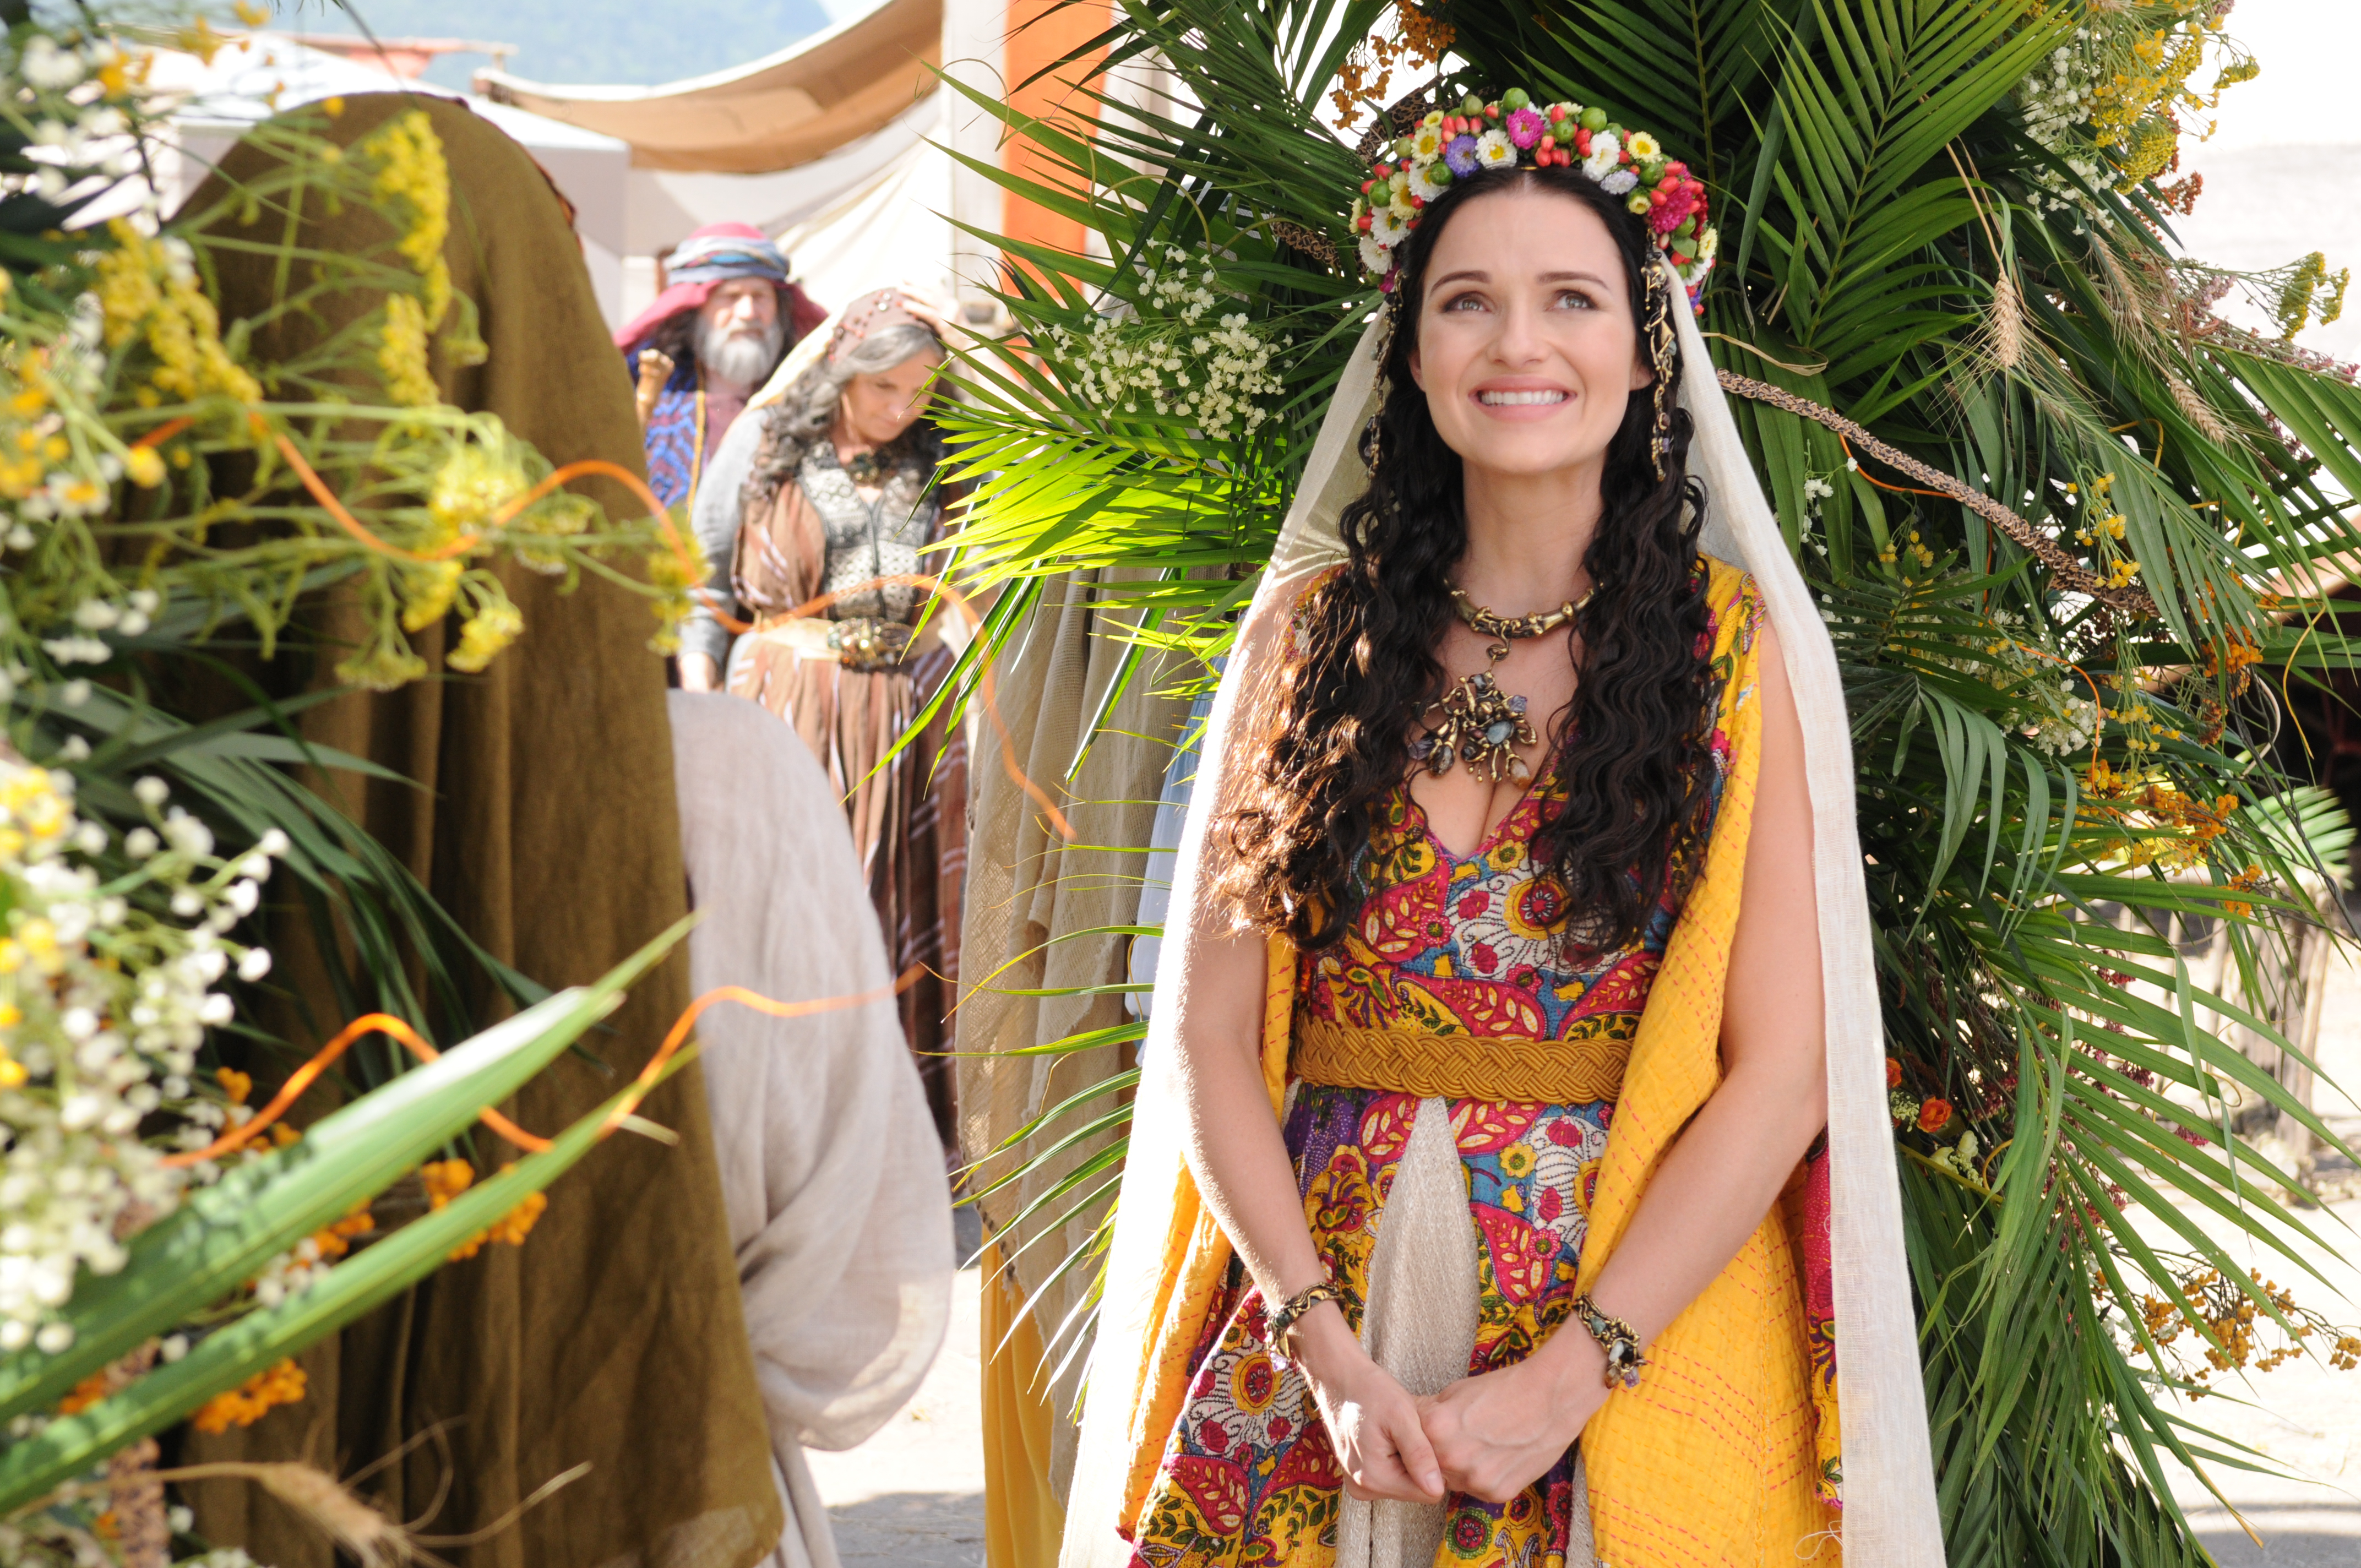 Nanda Ziegler in José do Egito (2013 TV Series).